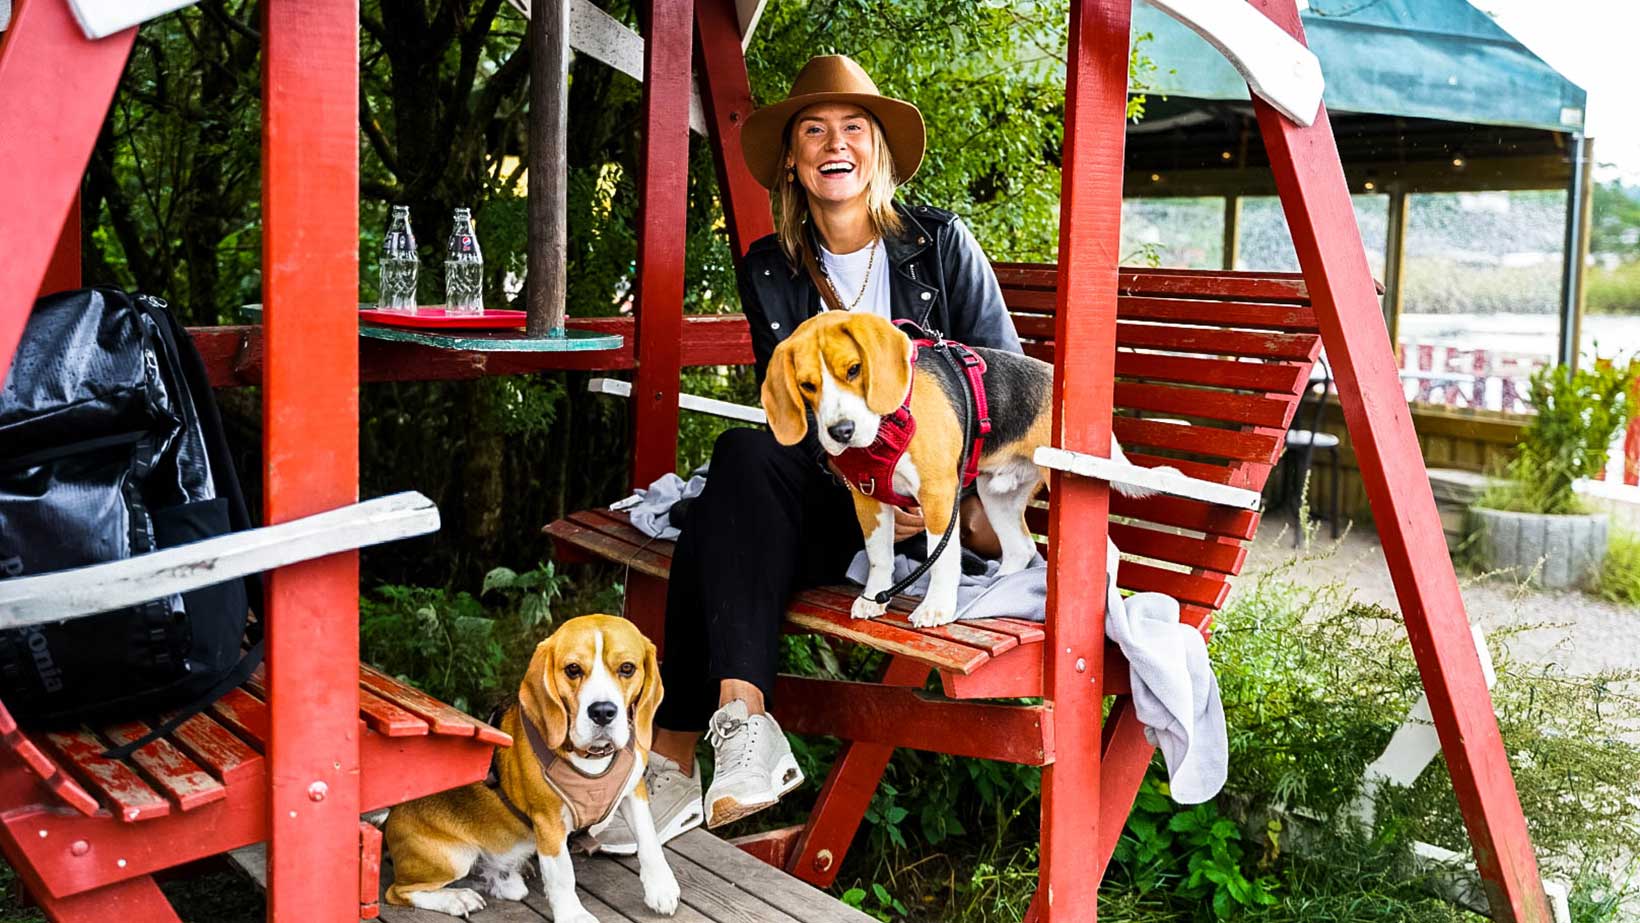 Judith Noordzij met haar beagles op een terras met rood houten bankje